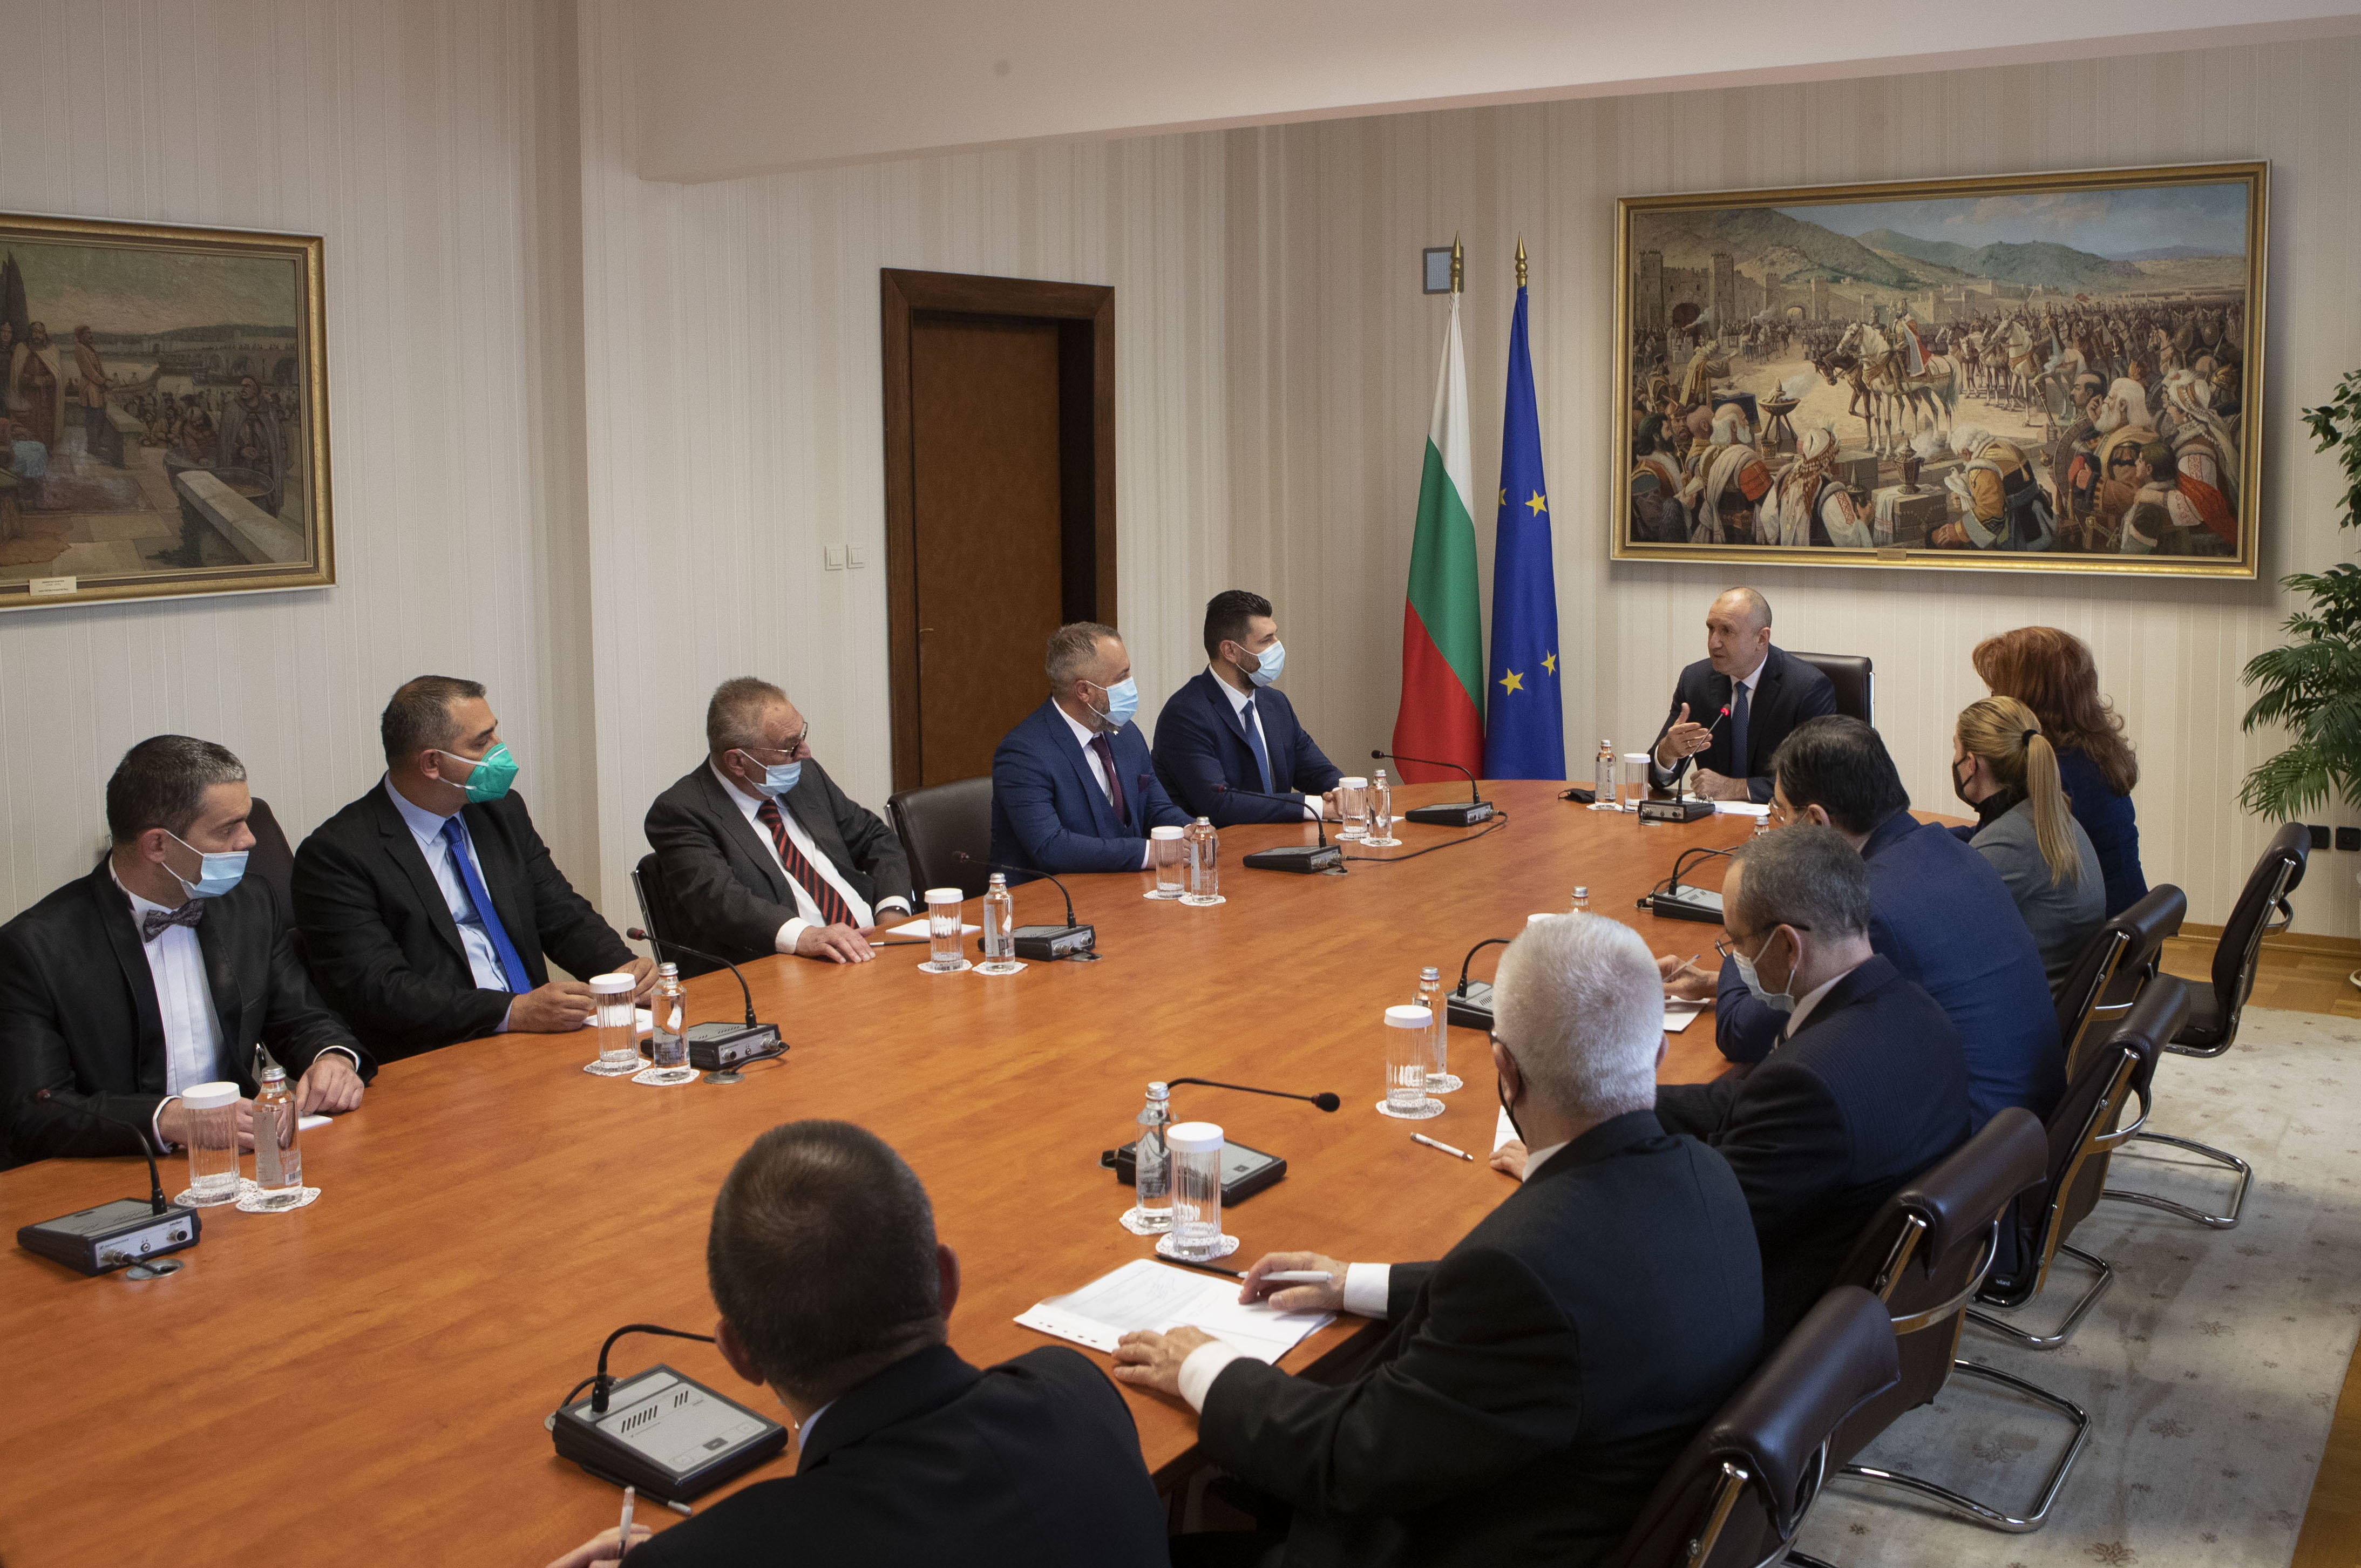 Тези дни сме свидетели на постъпки и изявления от България